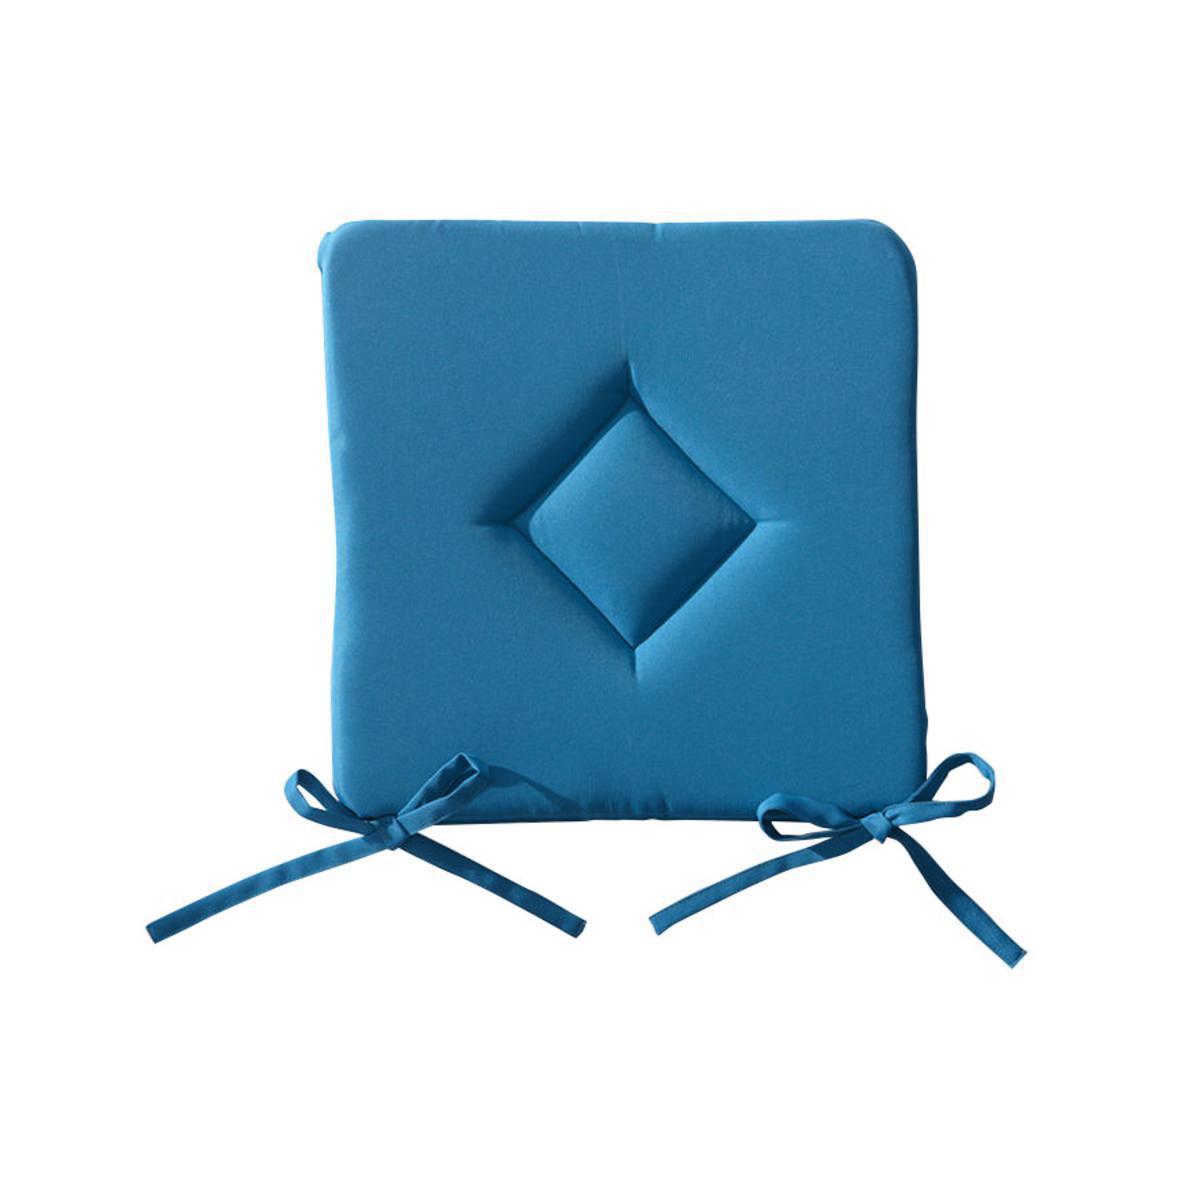 Galette de chaise en polyester - 40 cm x 40 cm x 3 cm - Bleu